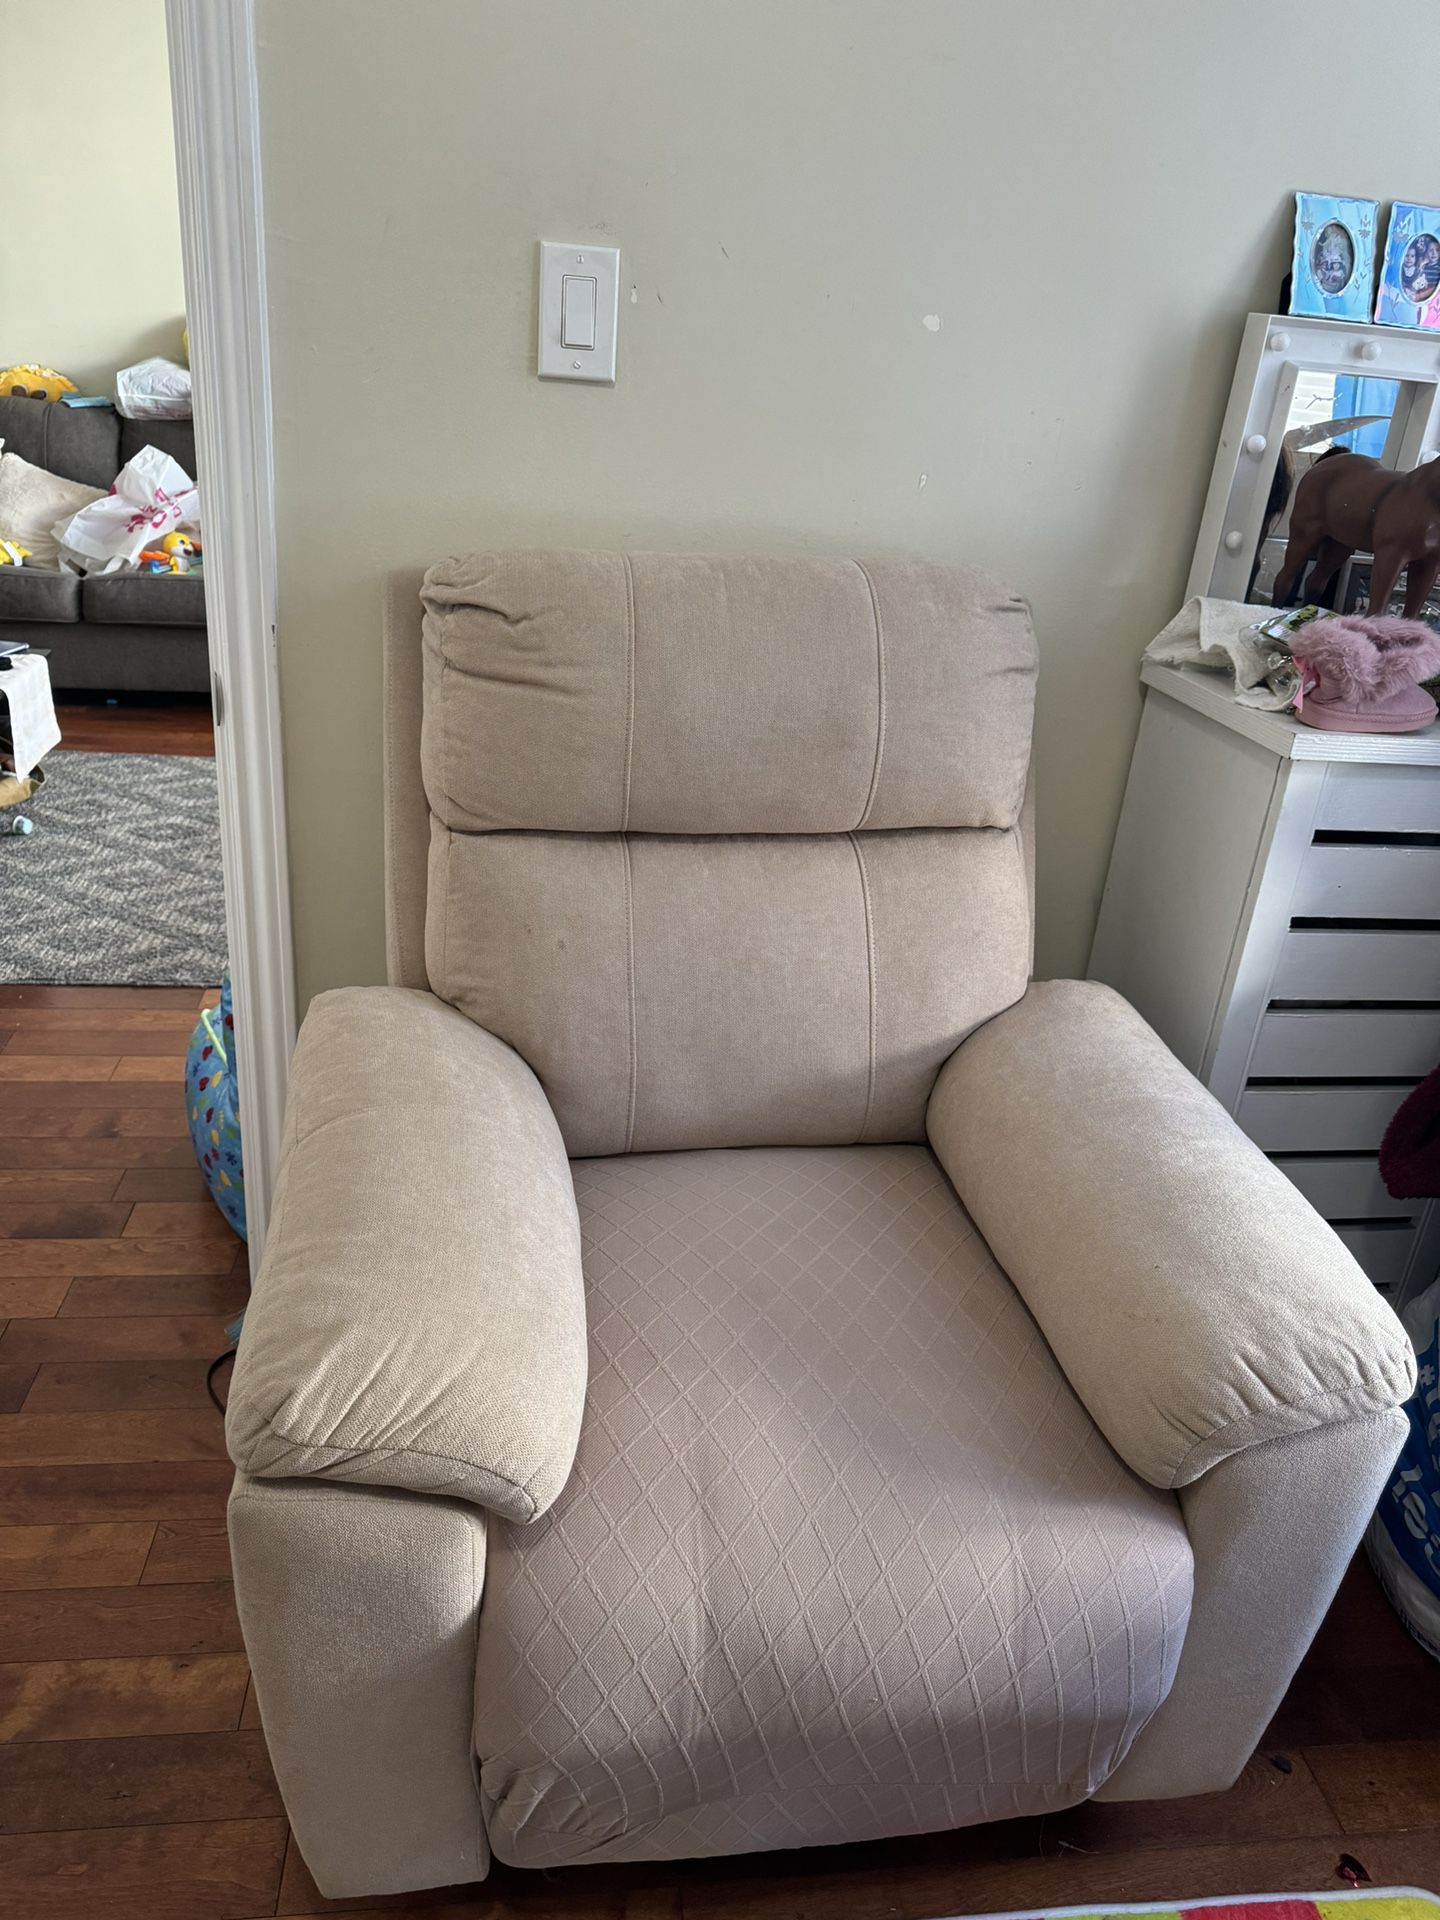 Recliner Sofa Chair